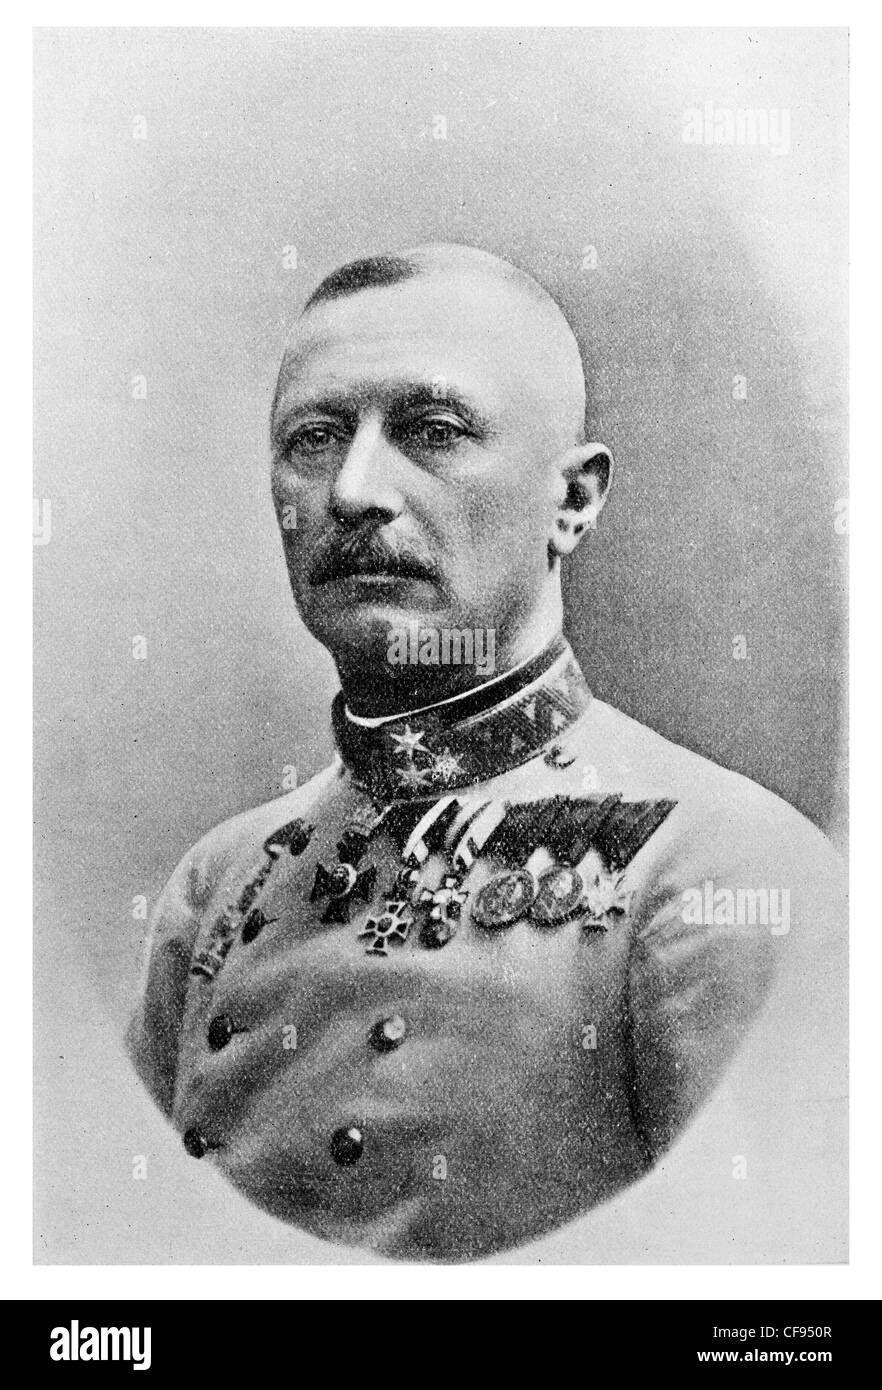 Oskar Potiorek général Officier de l'armée austro-hongroise, qui a servi comme gouverneur de la Bosnie-et-Herzégovine Banque D'Images